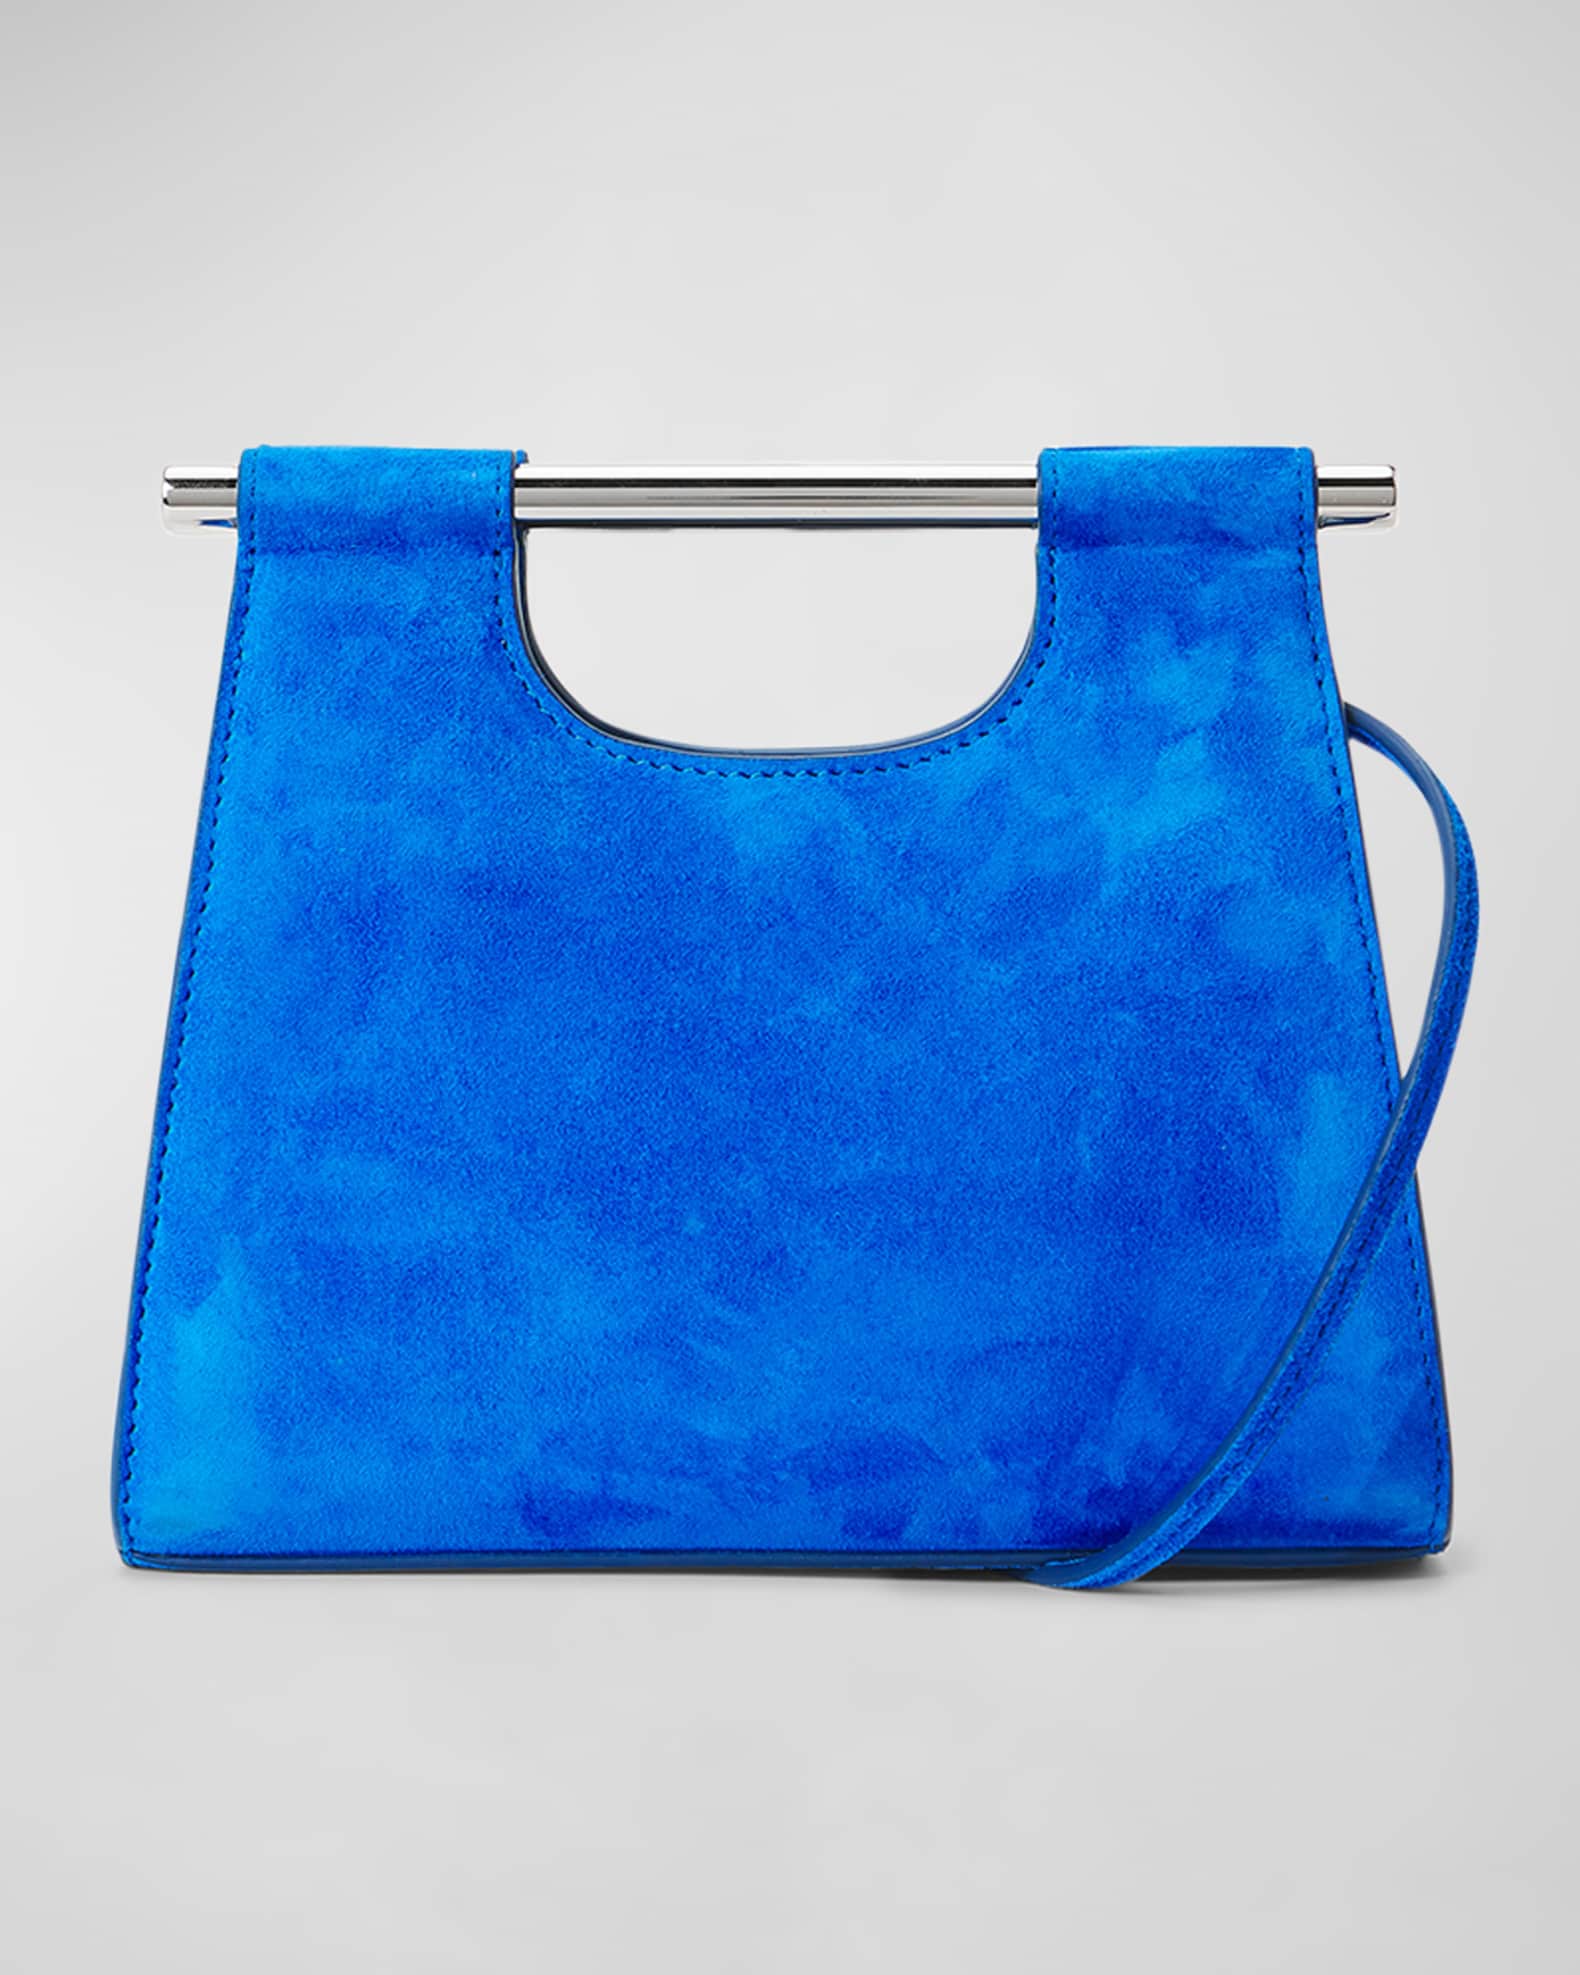 Blue purse, Crocodile, Mate, Silver. SMALL MICHELLE